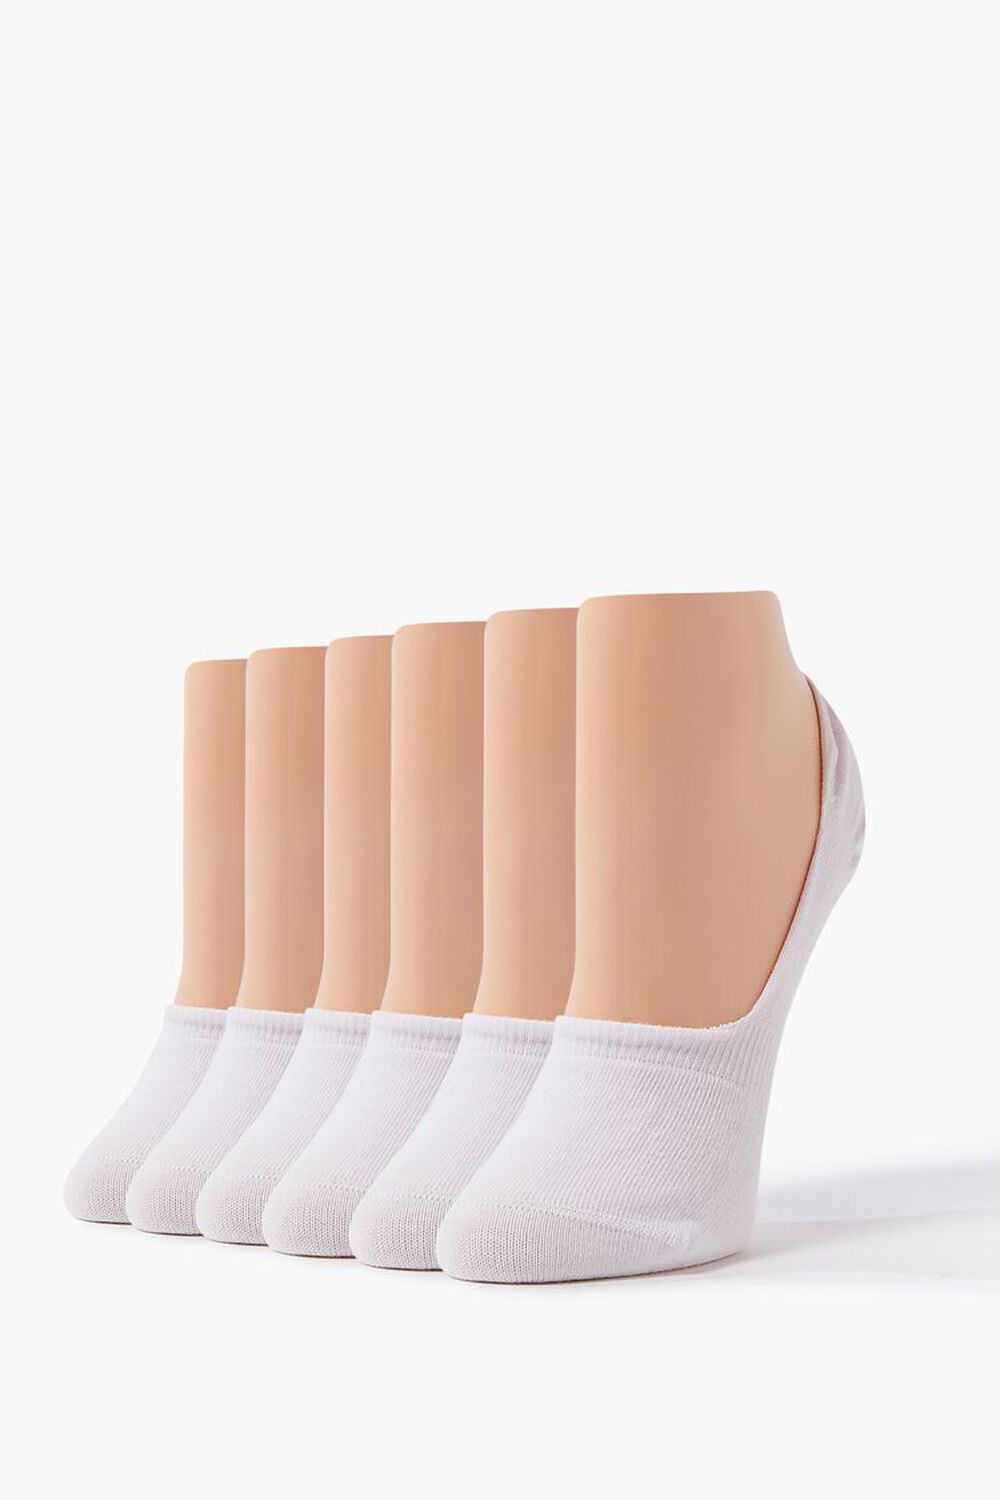 WHITE/WHITE No-Show Sock Set, image 1